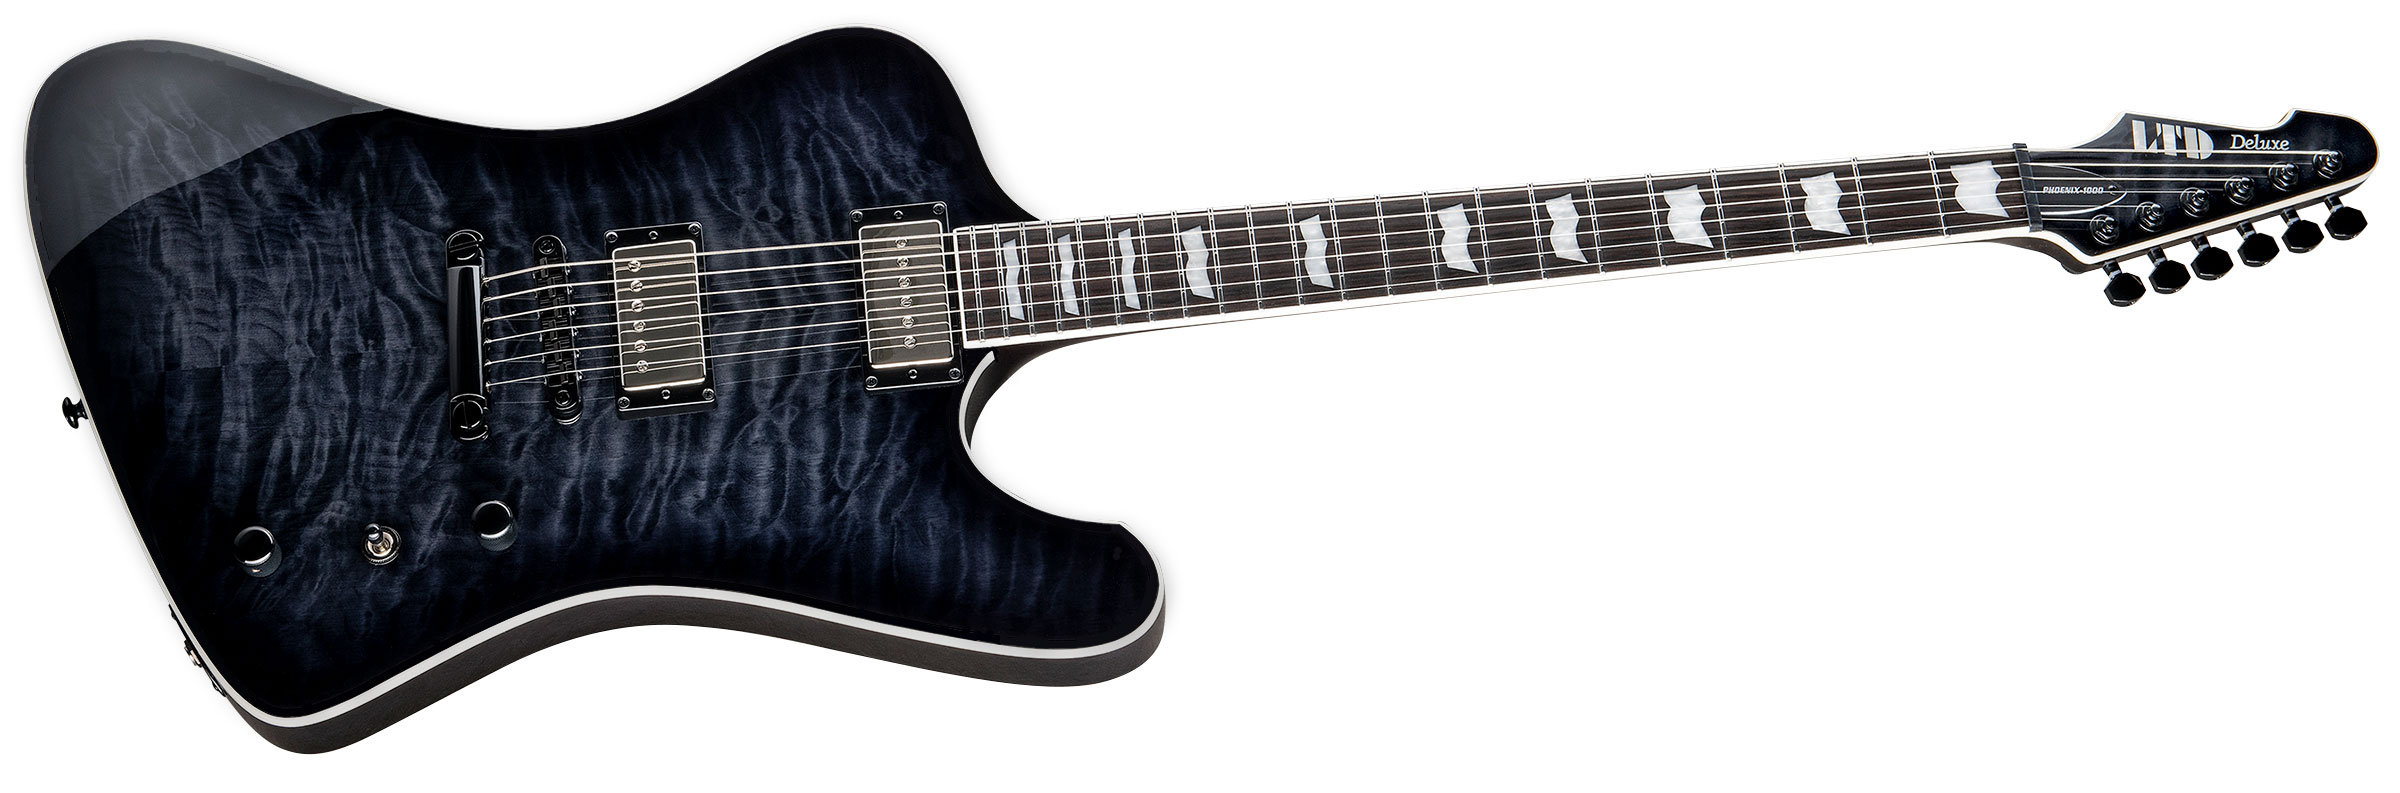 Ltd Phoenix-1000 Hs Seymour Duncan Ht Eb - See Thru Black Sunburst - Retro-rock elektrische gitaar - Variation 1